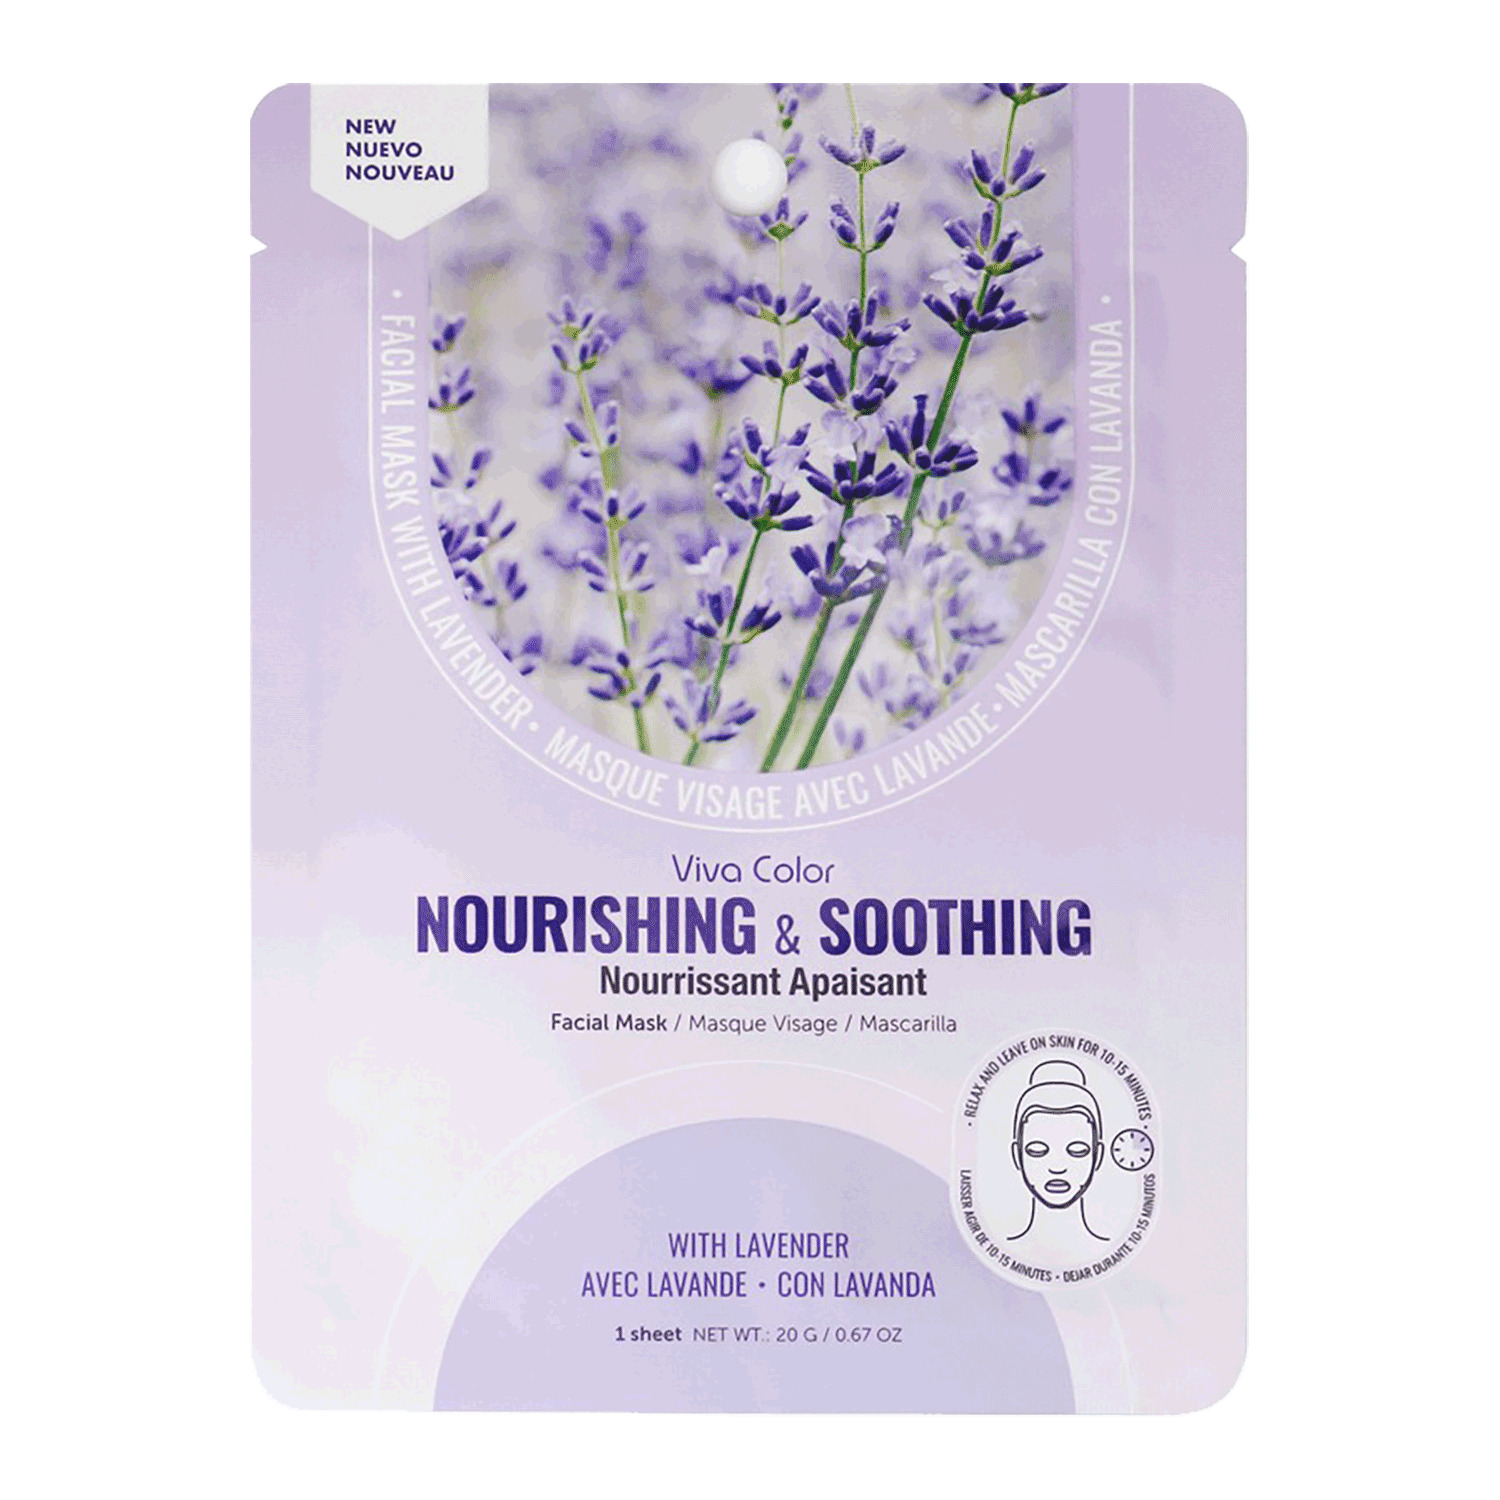 Mariposa - Nourishing & soothing facial mask, lavender